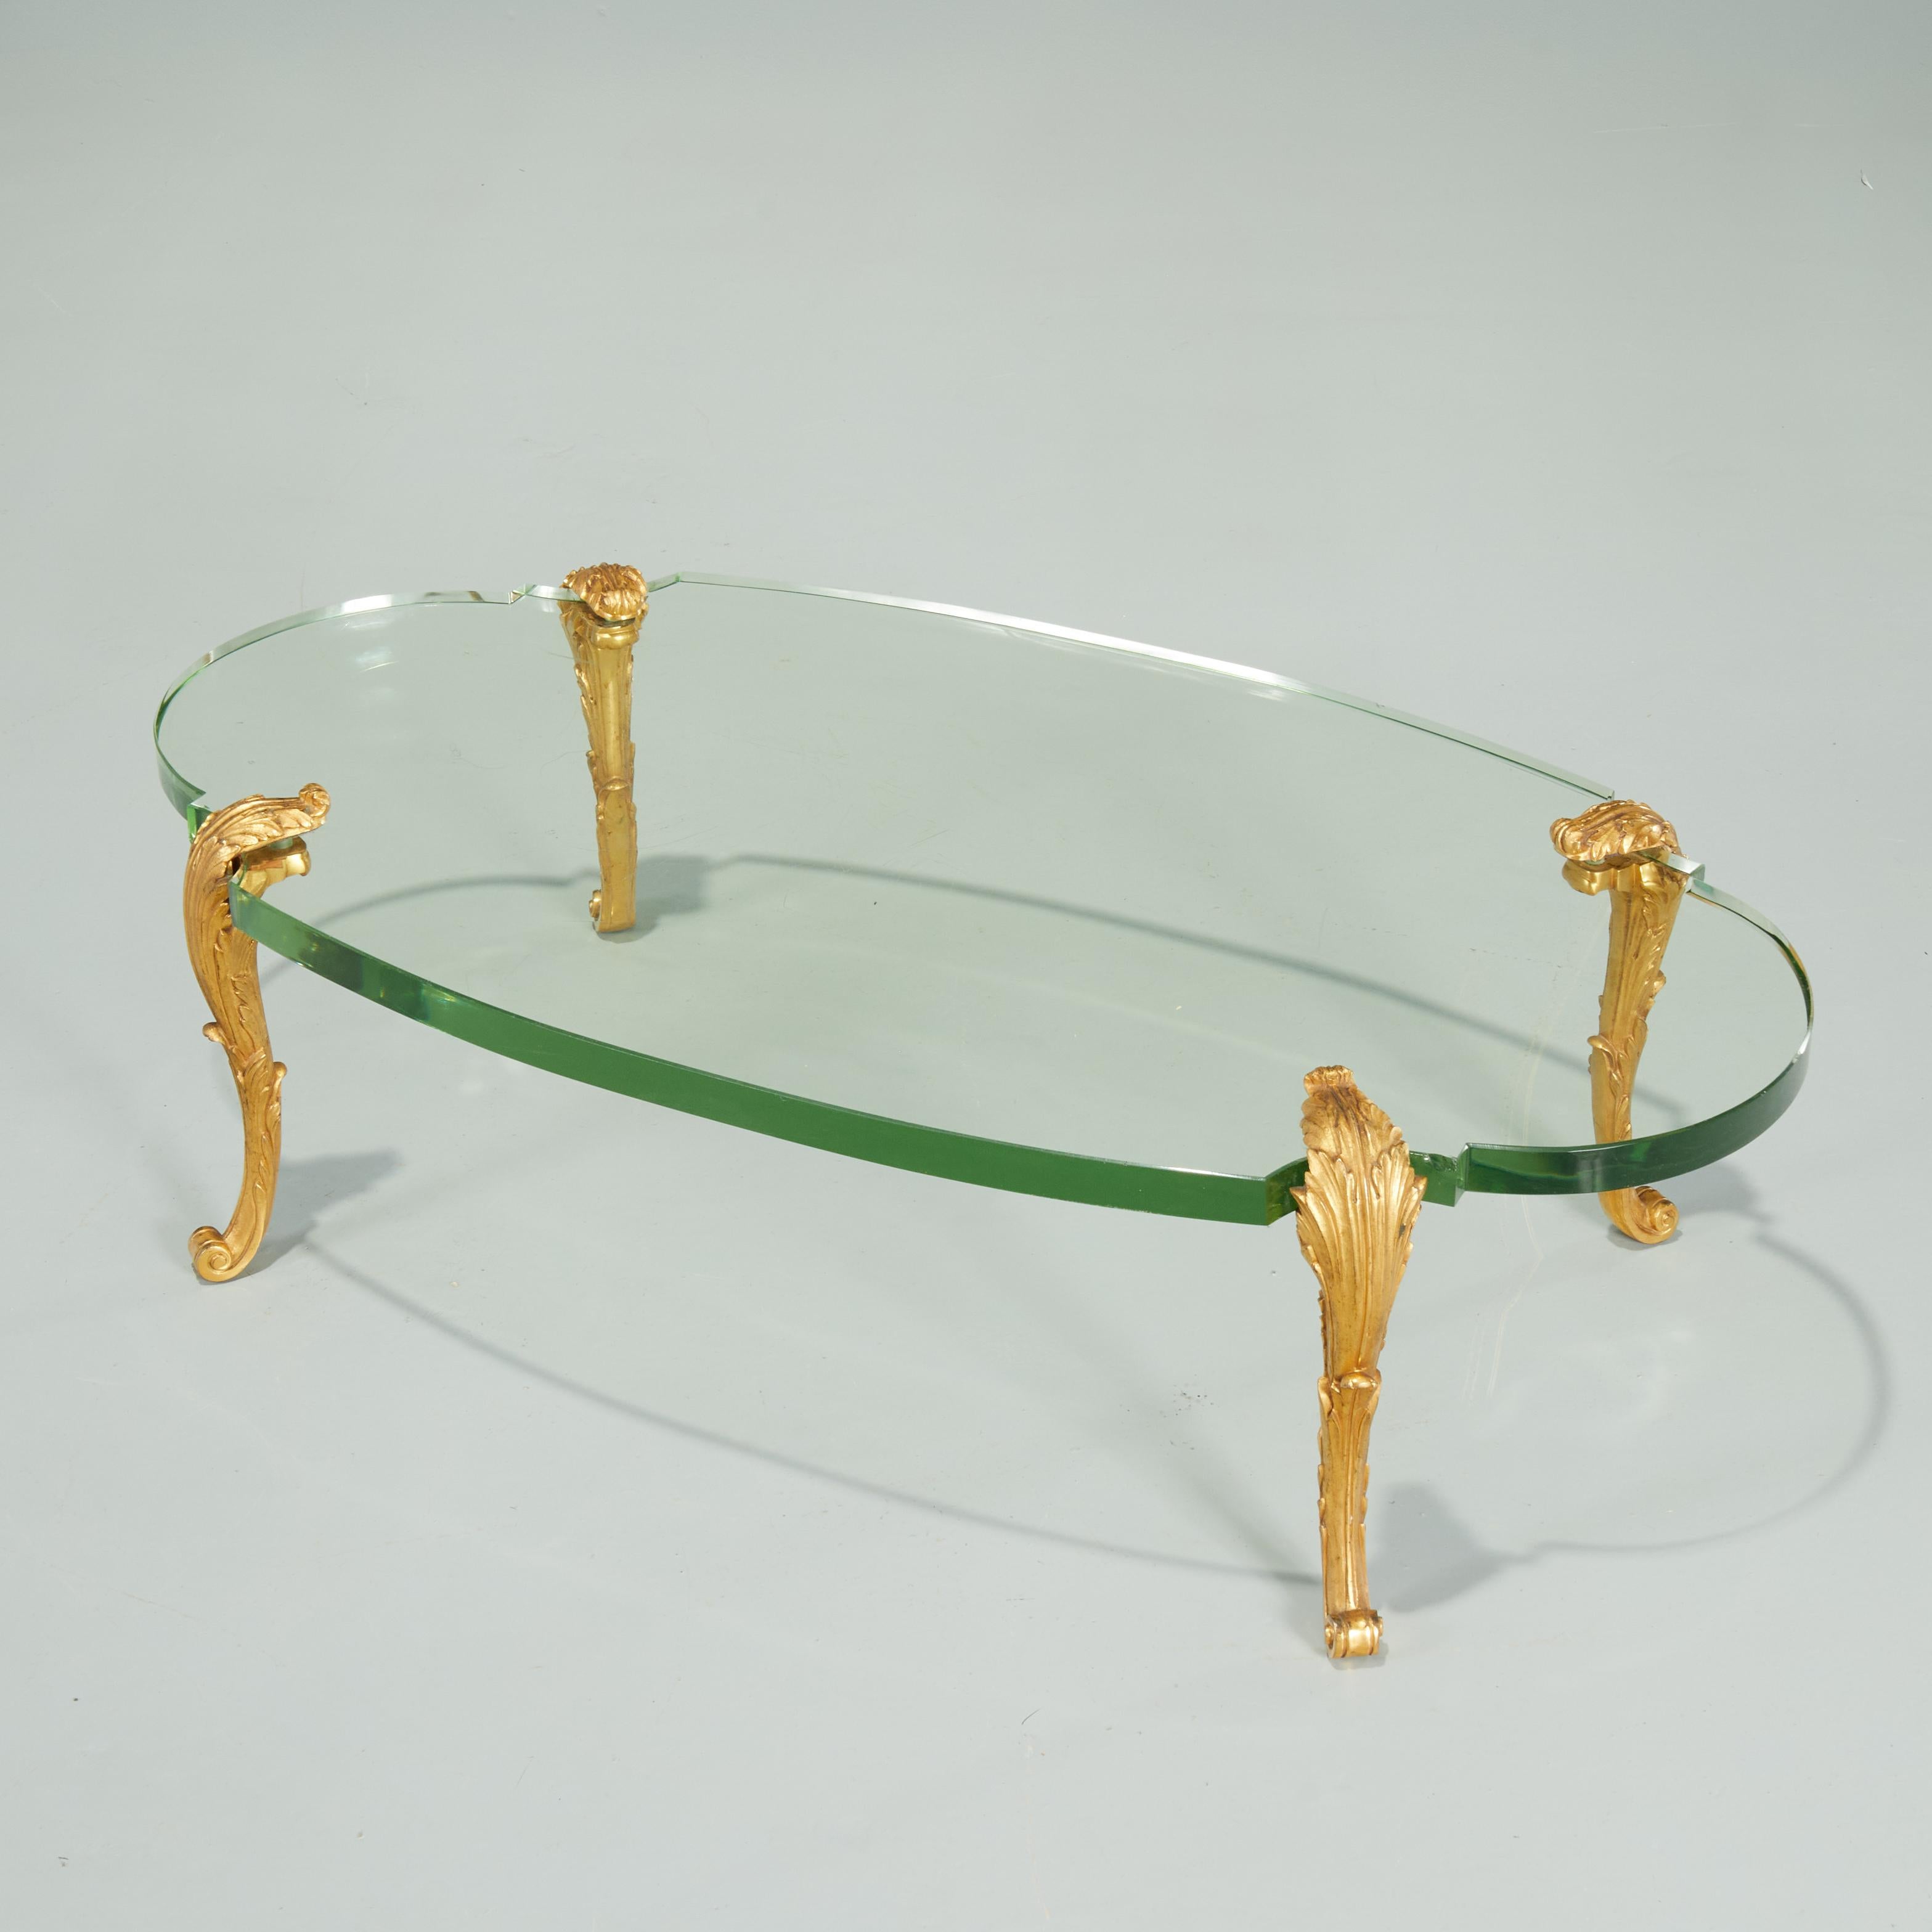 Design Jansen exceptionnellement rare. Une version moderne et chic d'une table basse de style Louis XV, avec un plateau en verre vert de 1,5